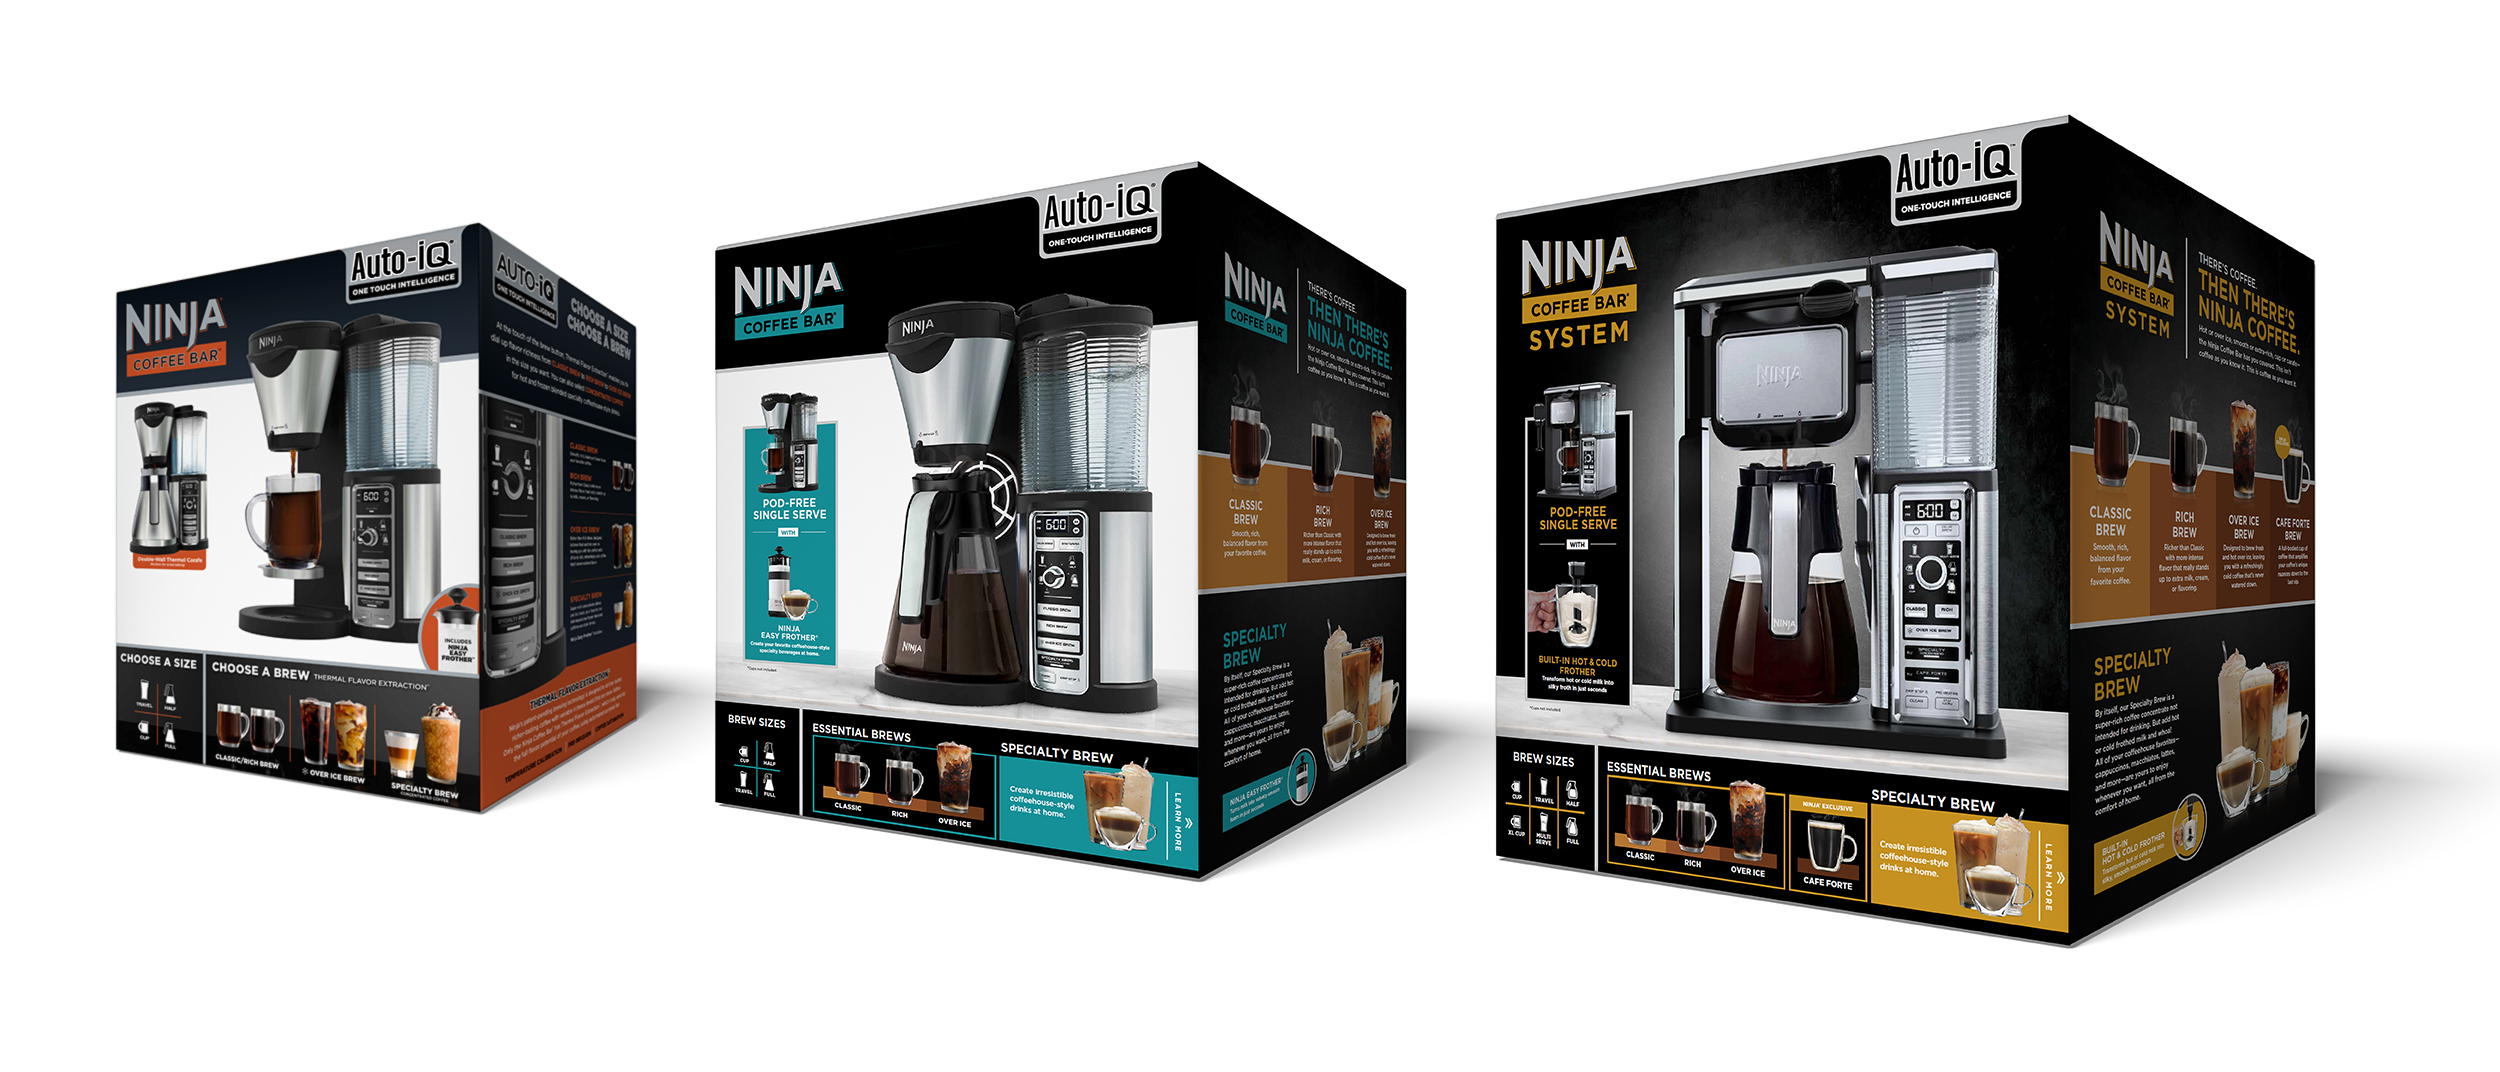 SharkNinja: Sofia Vergara Serves Up the Ninja Coffee Bar System – O'Malley  Hansen Communications